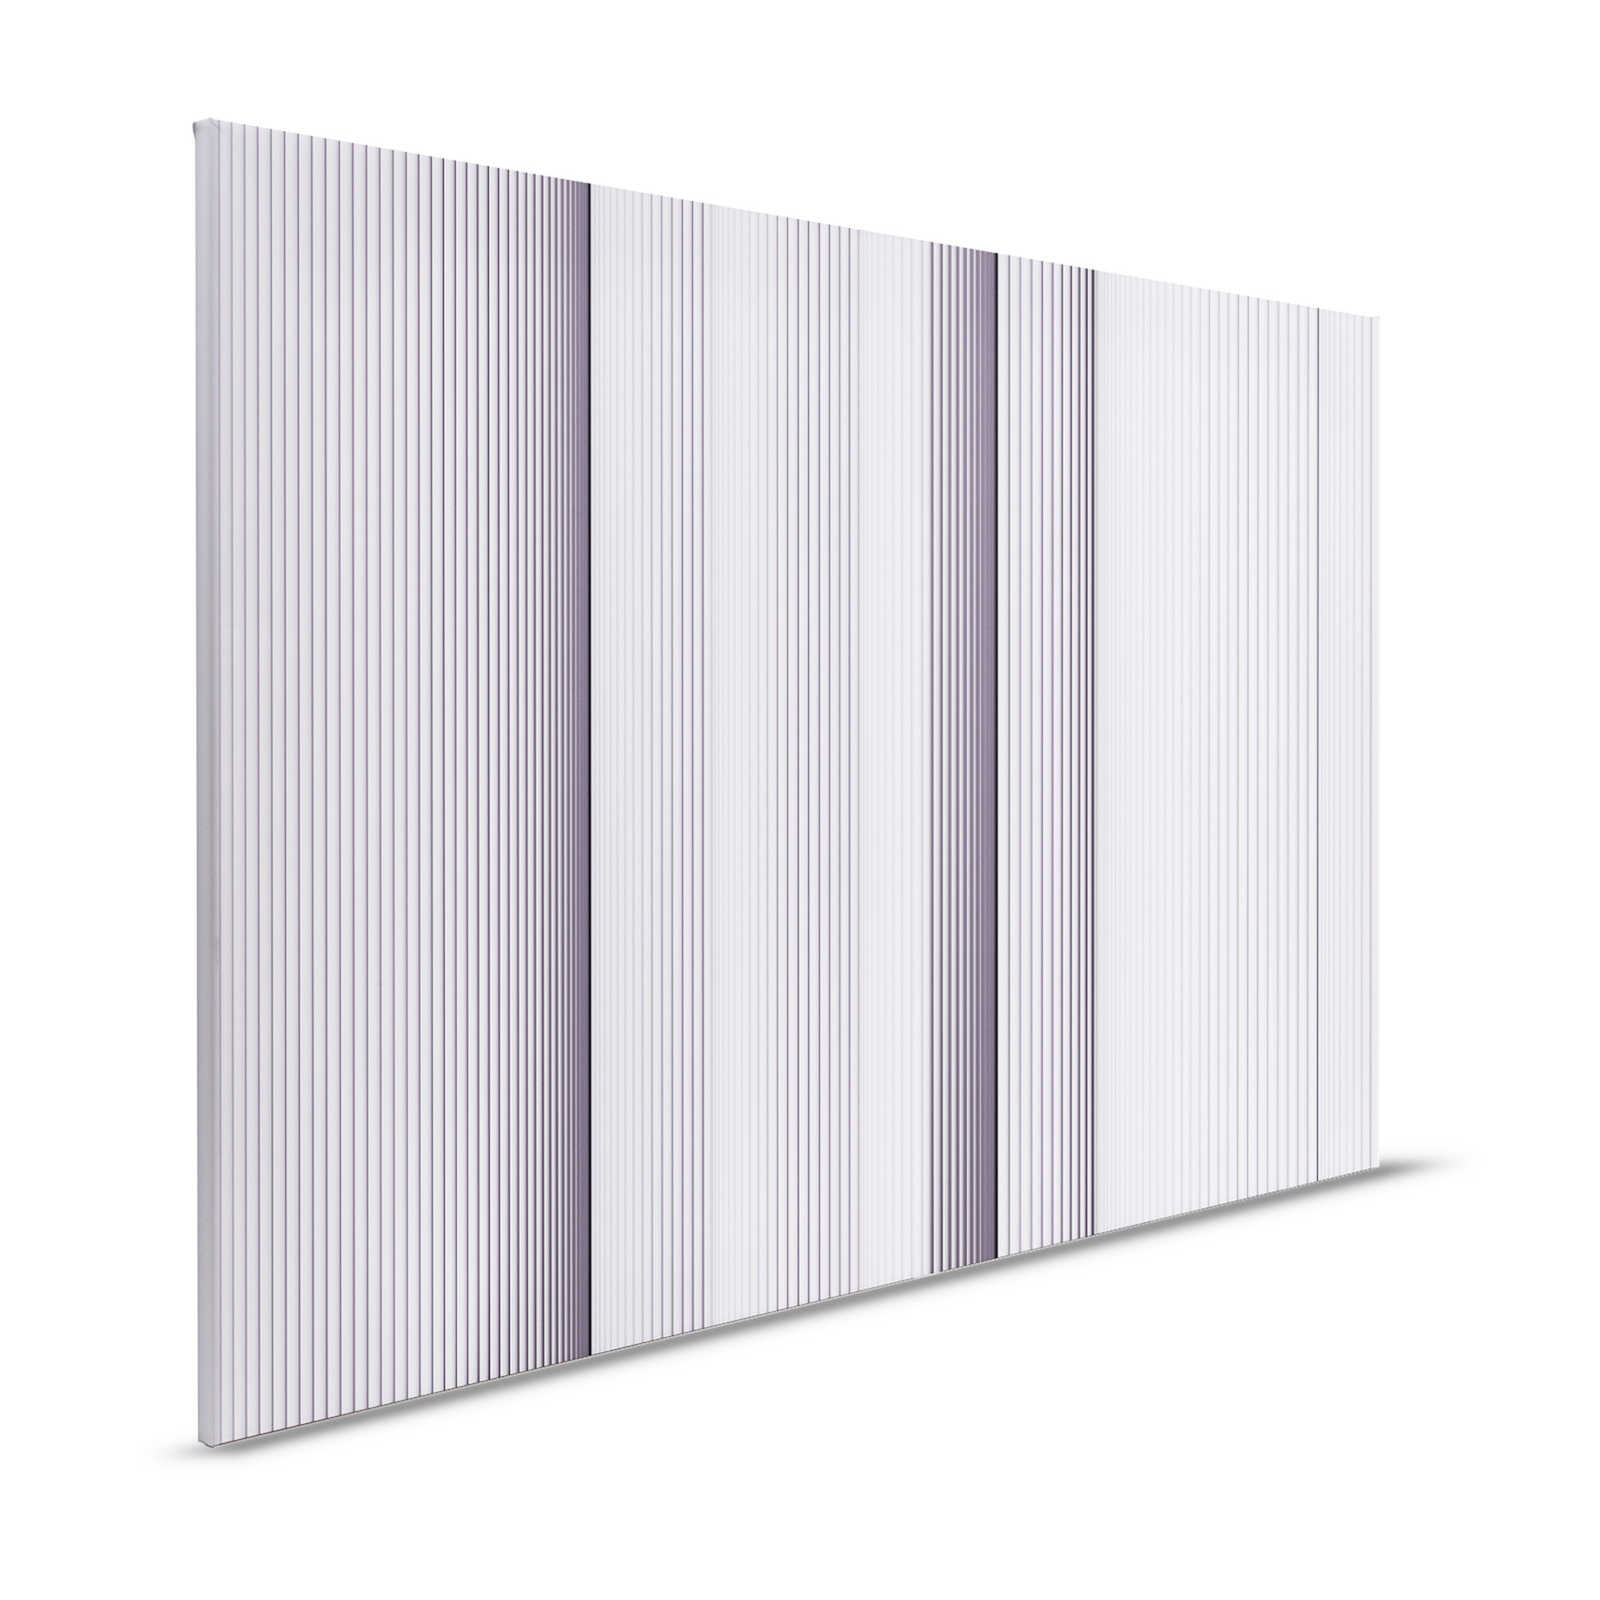 Magic Wall 1 - Pittura su tela a righe effetto illusione 3D, viola e bianco - 1,20 m x 0,80 m
